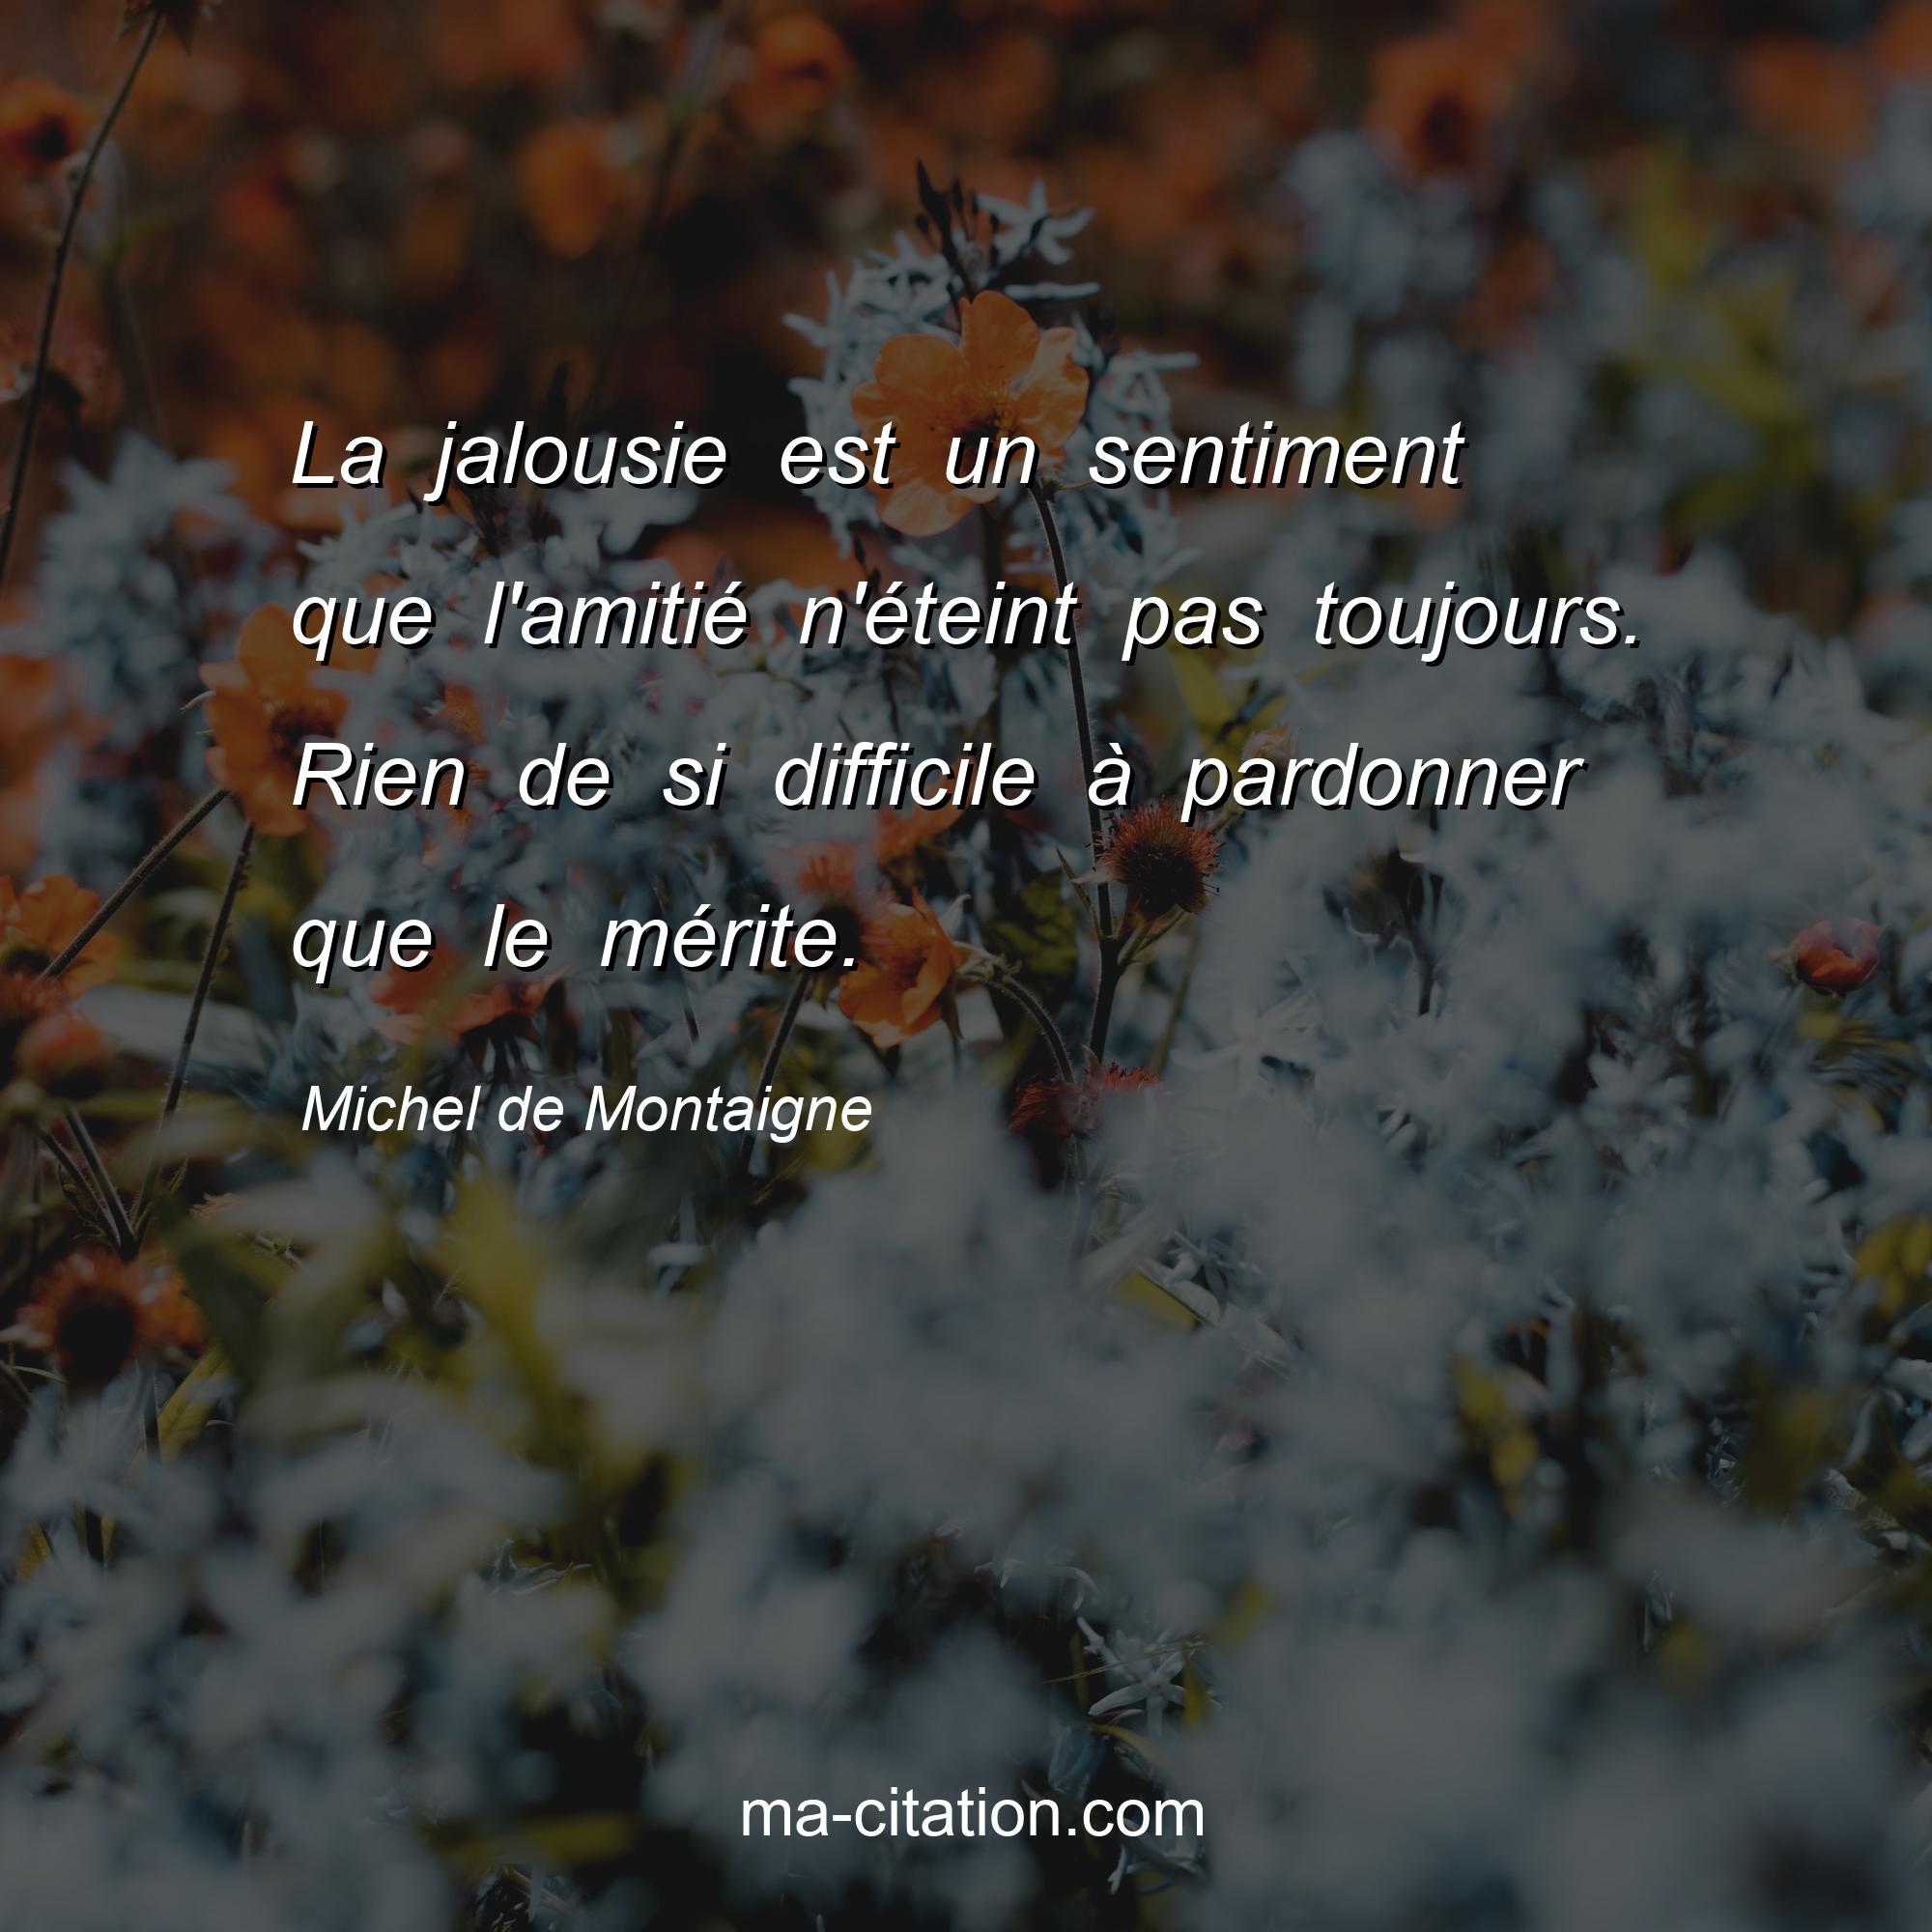 Michel de Montaigne : La jalousie est un sentiment que l'amitié n'éteint pas toujours. Rien de si difficile à pardonner que le mérite.